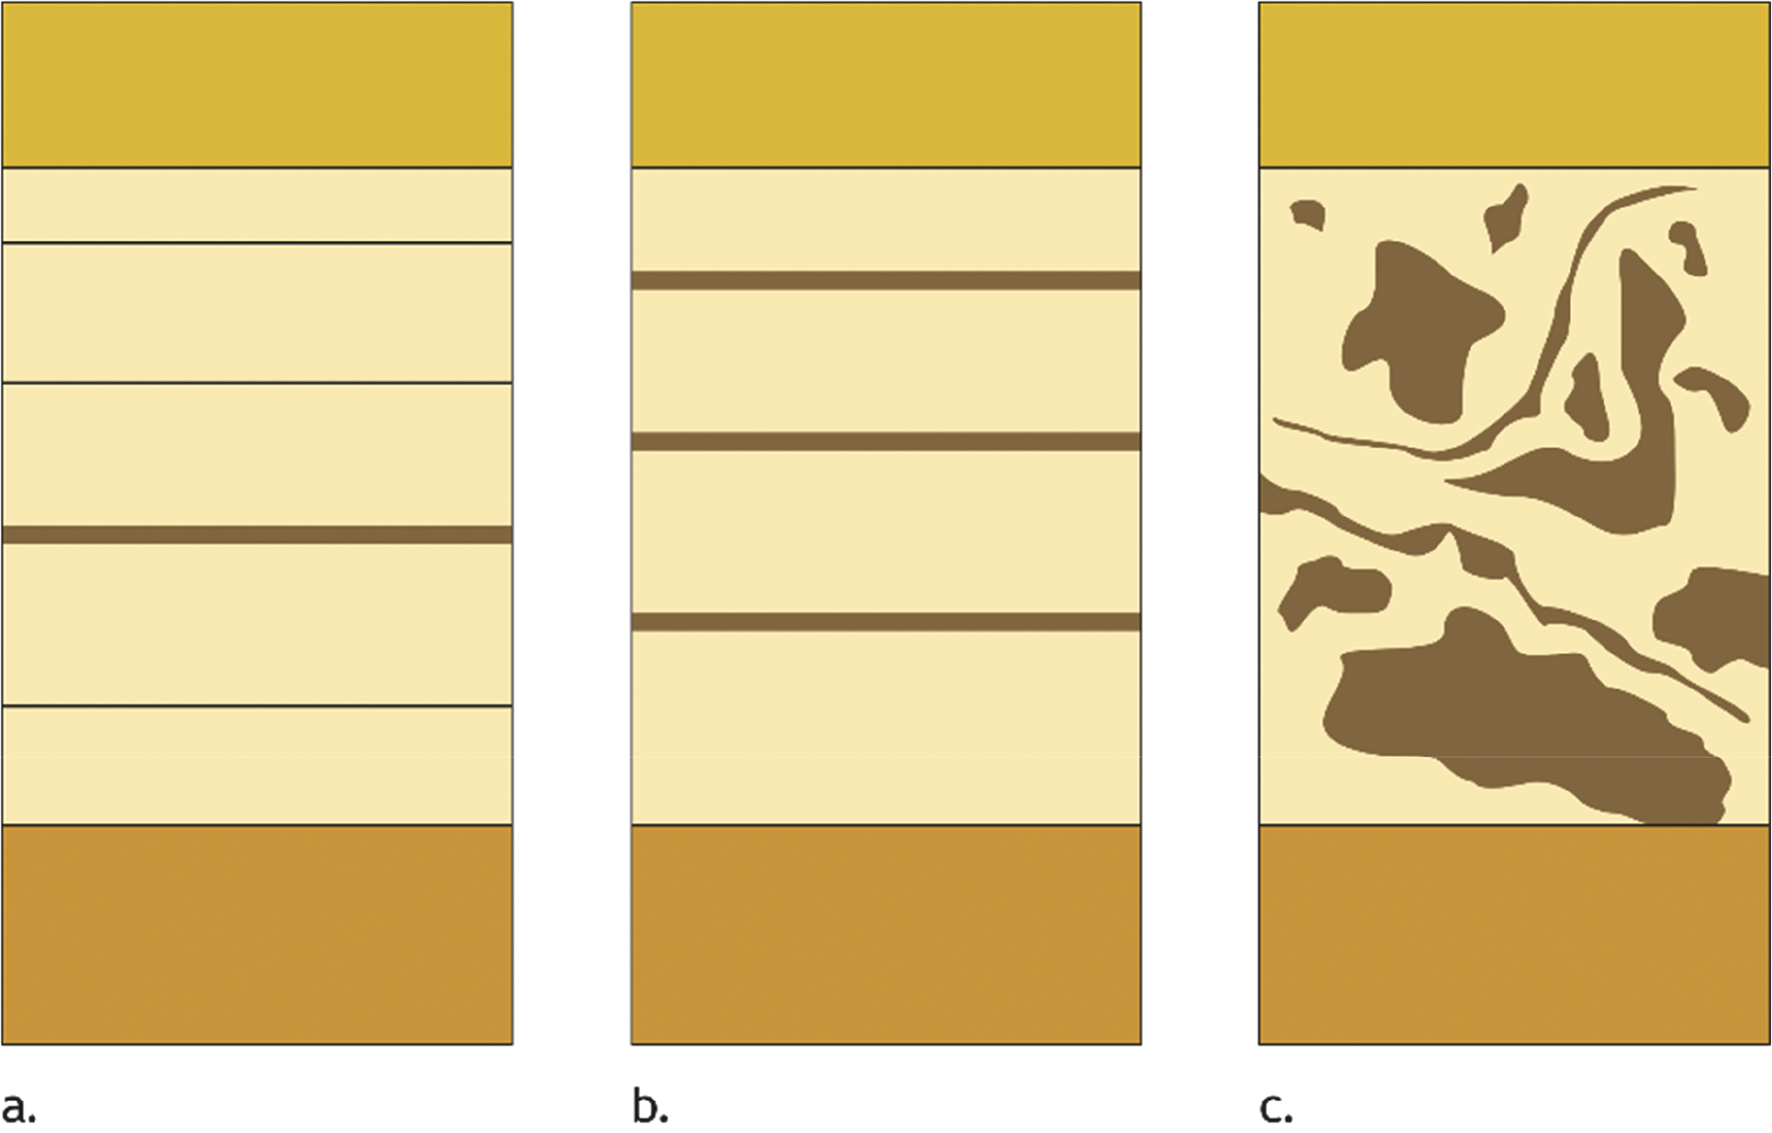 Figuur 5 De lichtgekleurde laag stelt een eenheid voor die uit een andere grondsoort bestaat dan de aangrenzende lagen. In het eerste geval (a) wordt de laag als een homogeen geheel beschreven met daarin een afwijkend laagje. In het tweede geval (b) wordt de laag beschreven als opgebouwd uit laagjes die in grondsoort verschillen. In het derde geval (c) wordt de laag beschreven als opgebouwd uit laagdelen die in grondsoort verschillen.